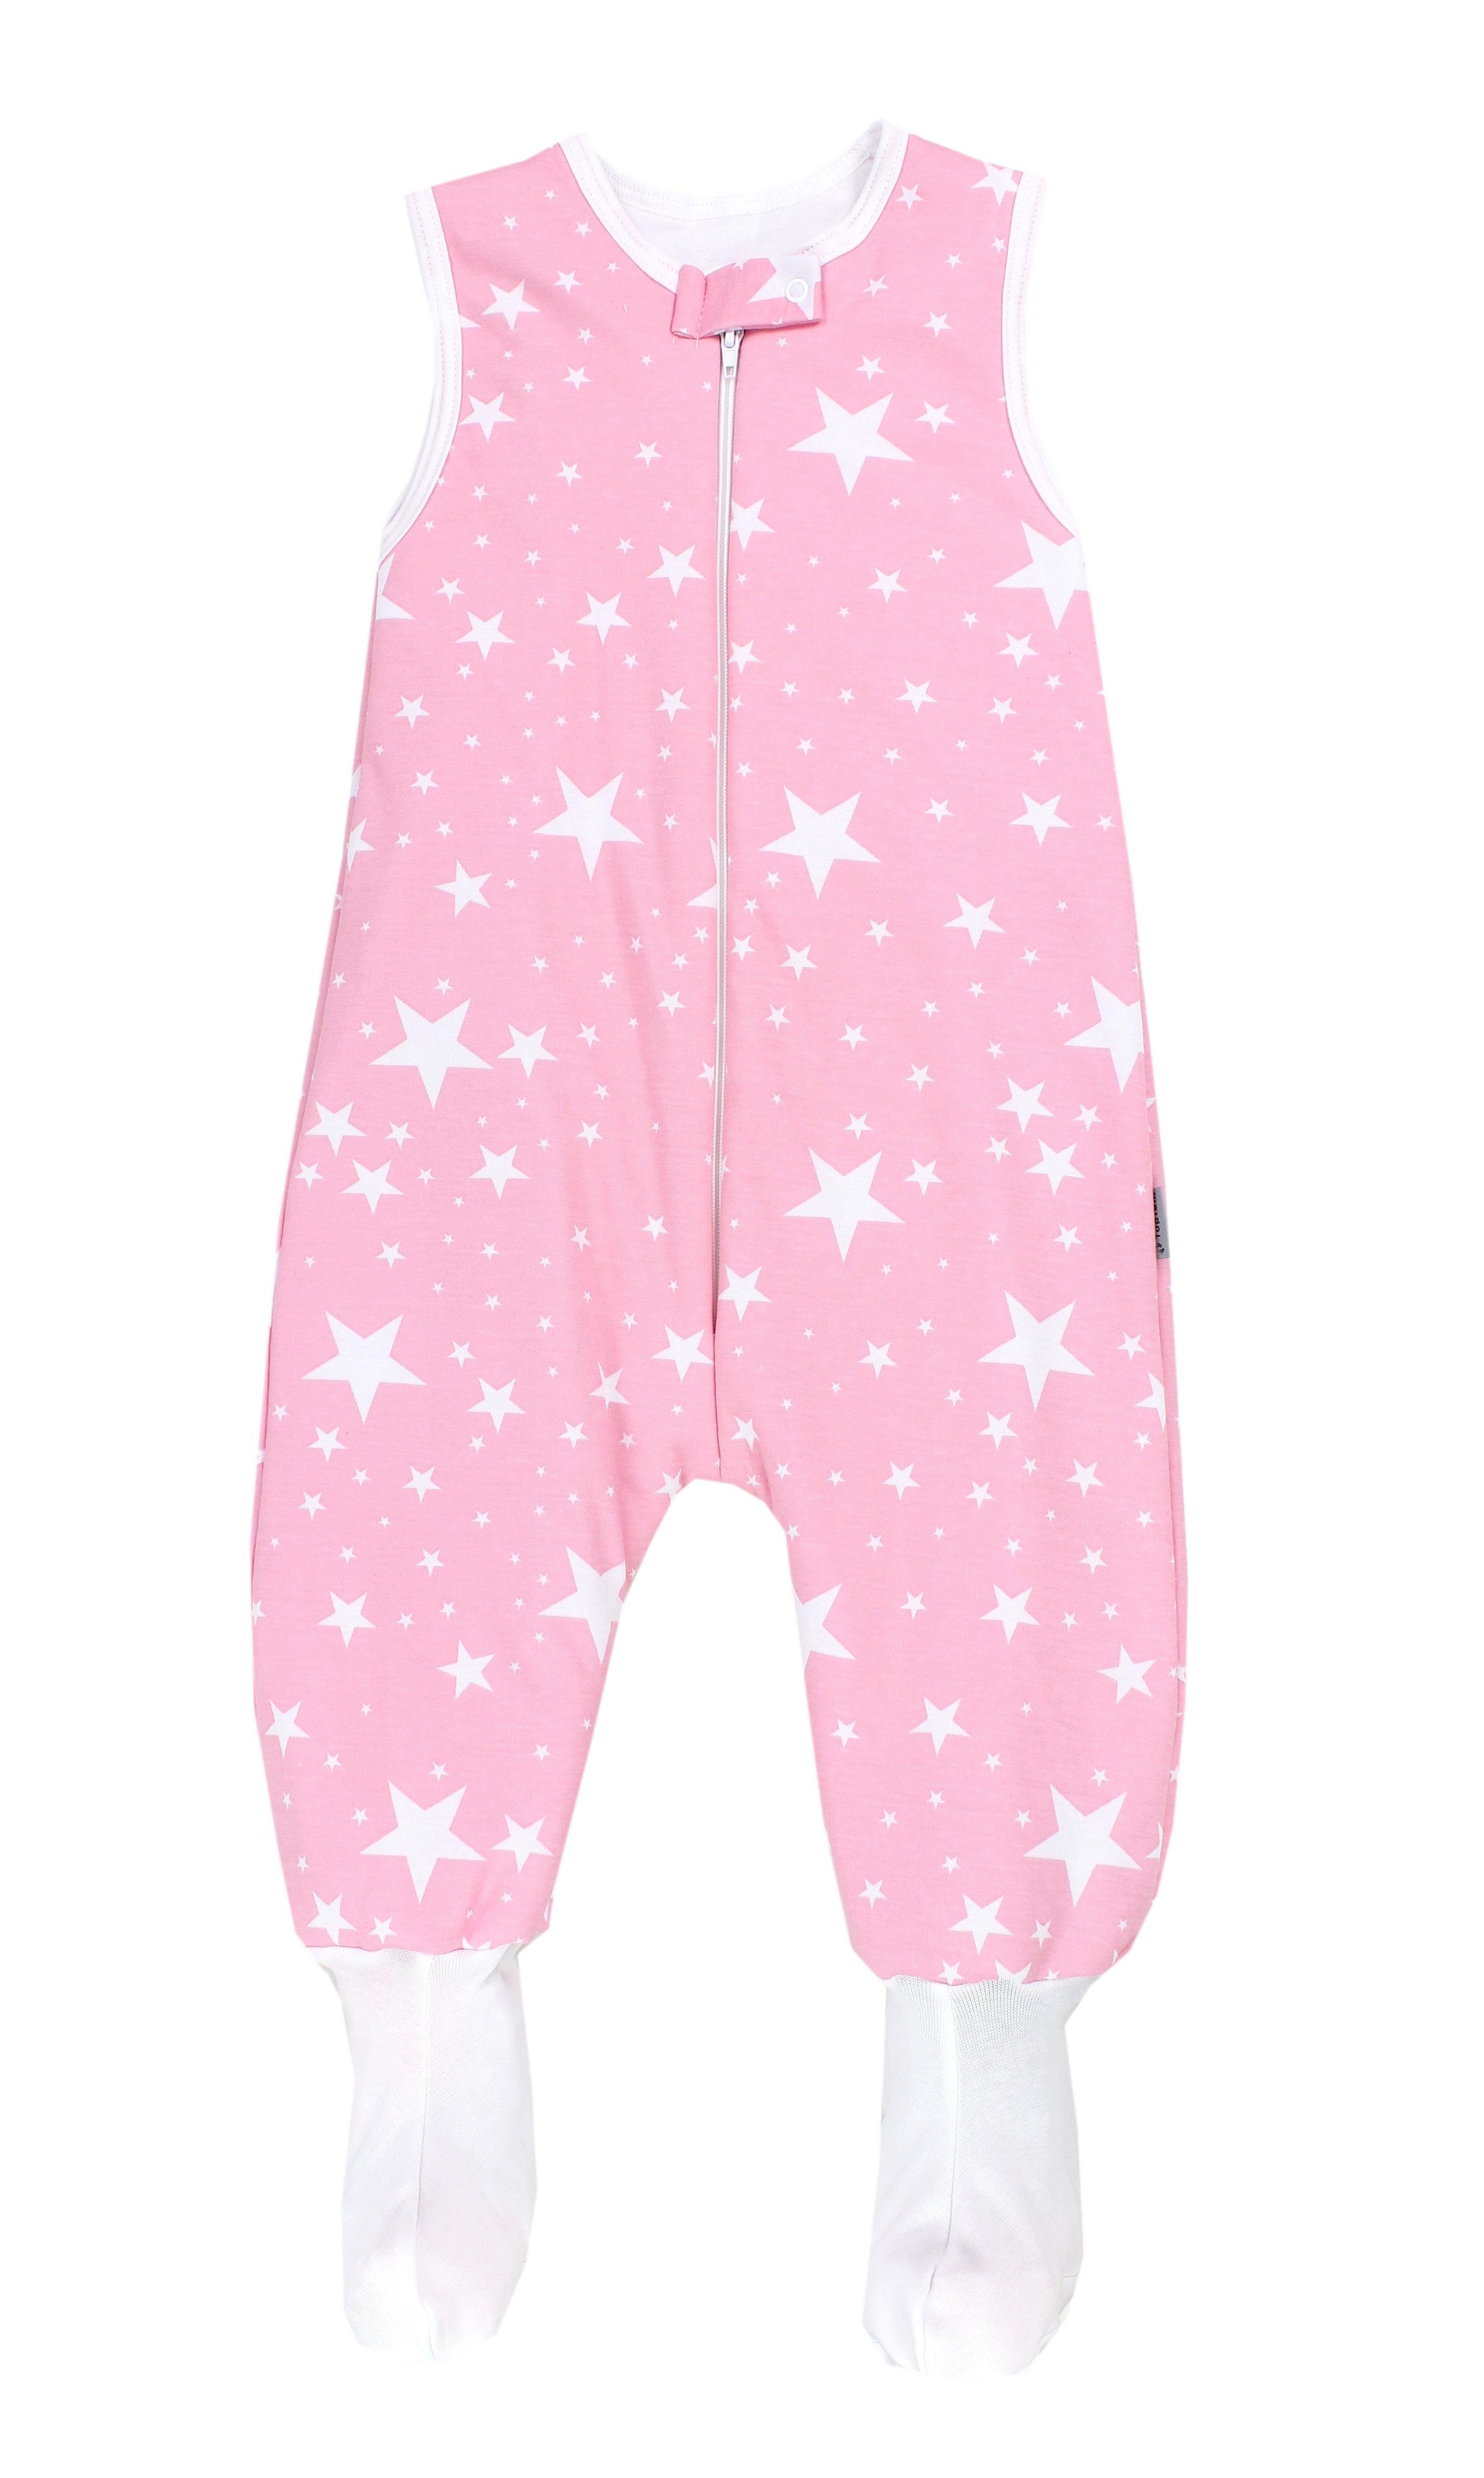 TupTam Babyschlafsack Winterschlafsack mit Beinen und Füßen OEKO-TEX zertifiziert, 2.5 TOG Weiße Sterne / Rosa